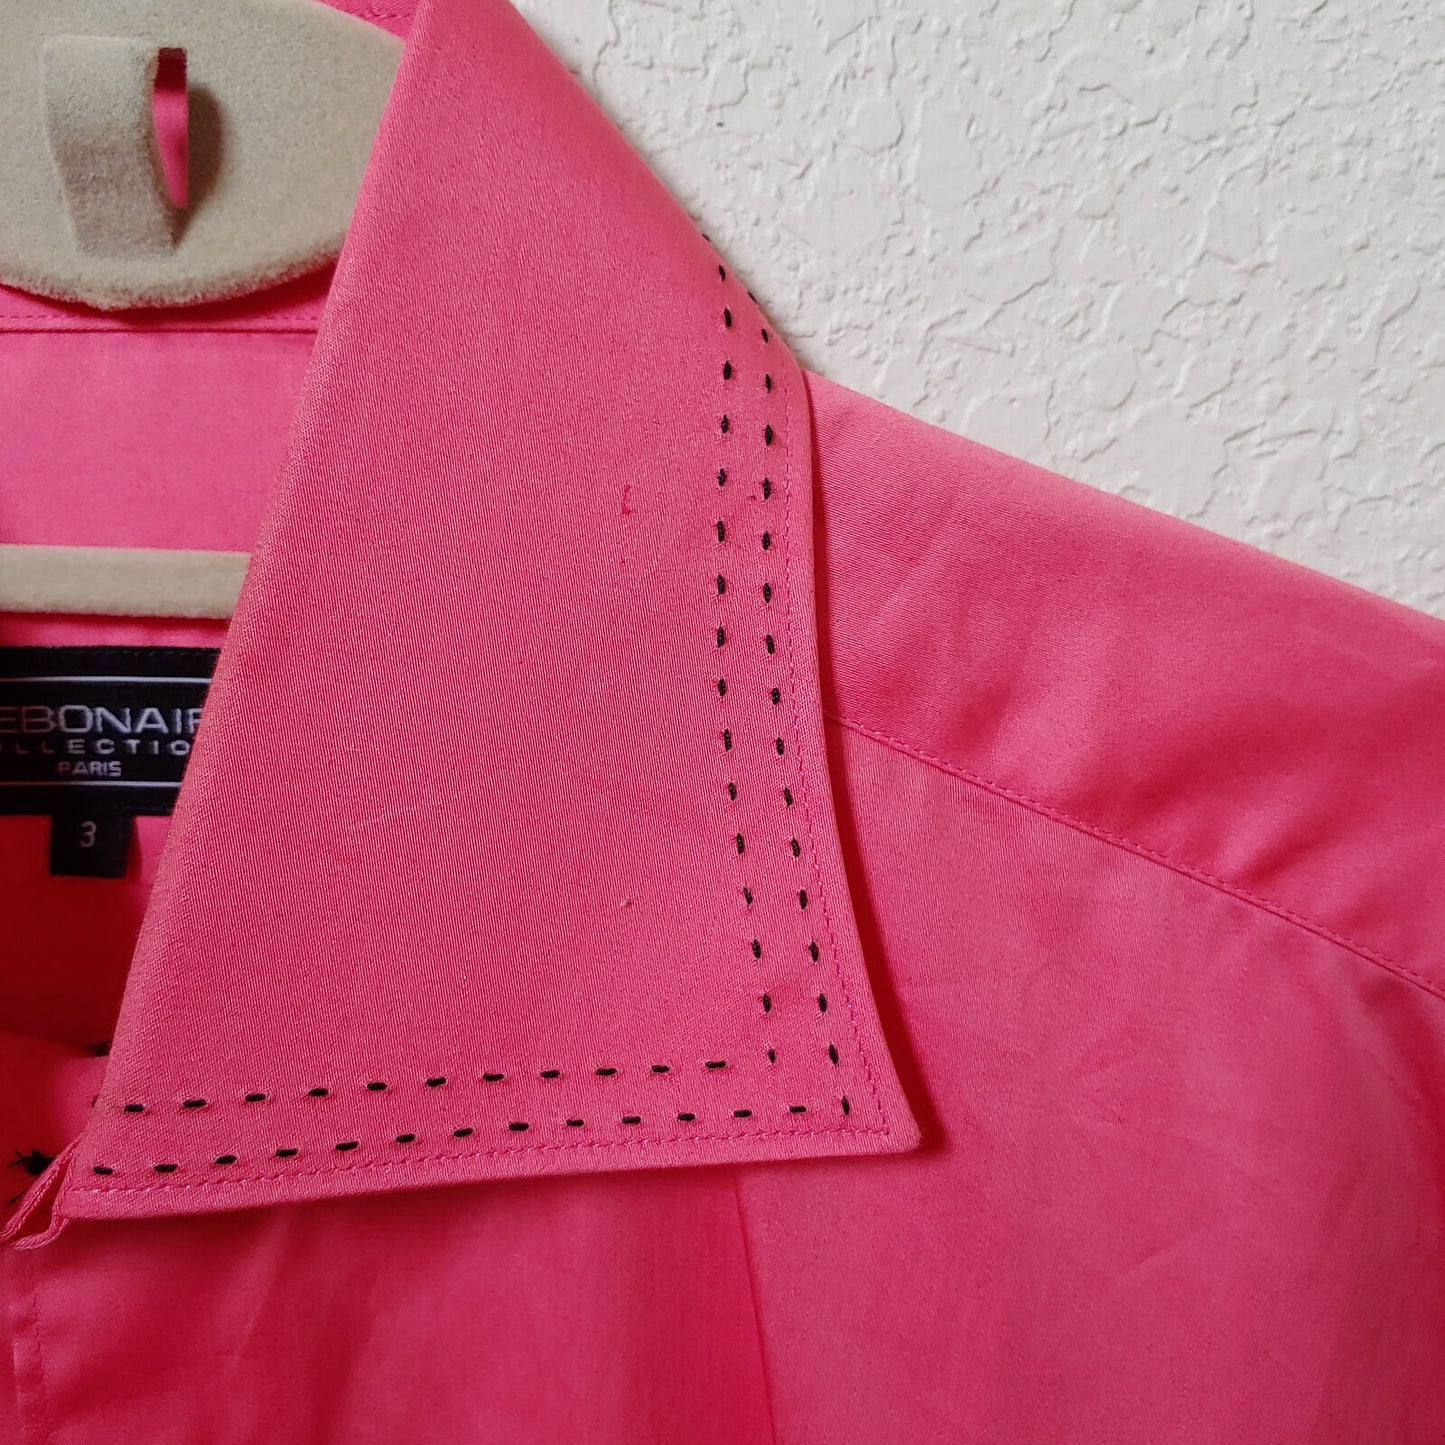 Debonair | Men's Pink Longsleeve Buttondown Casual Shirt | Sz. 3